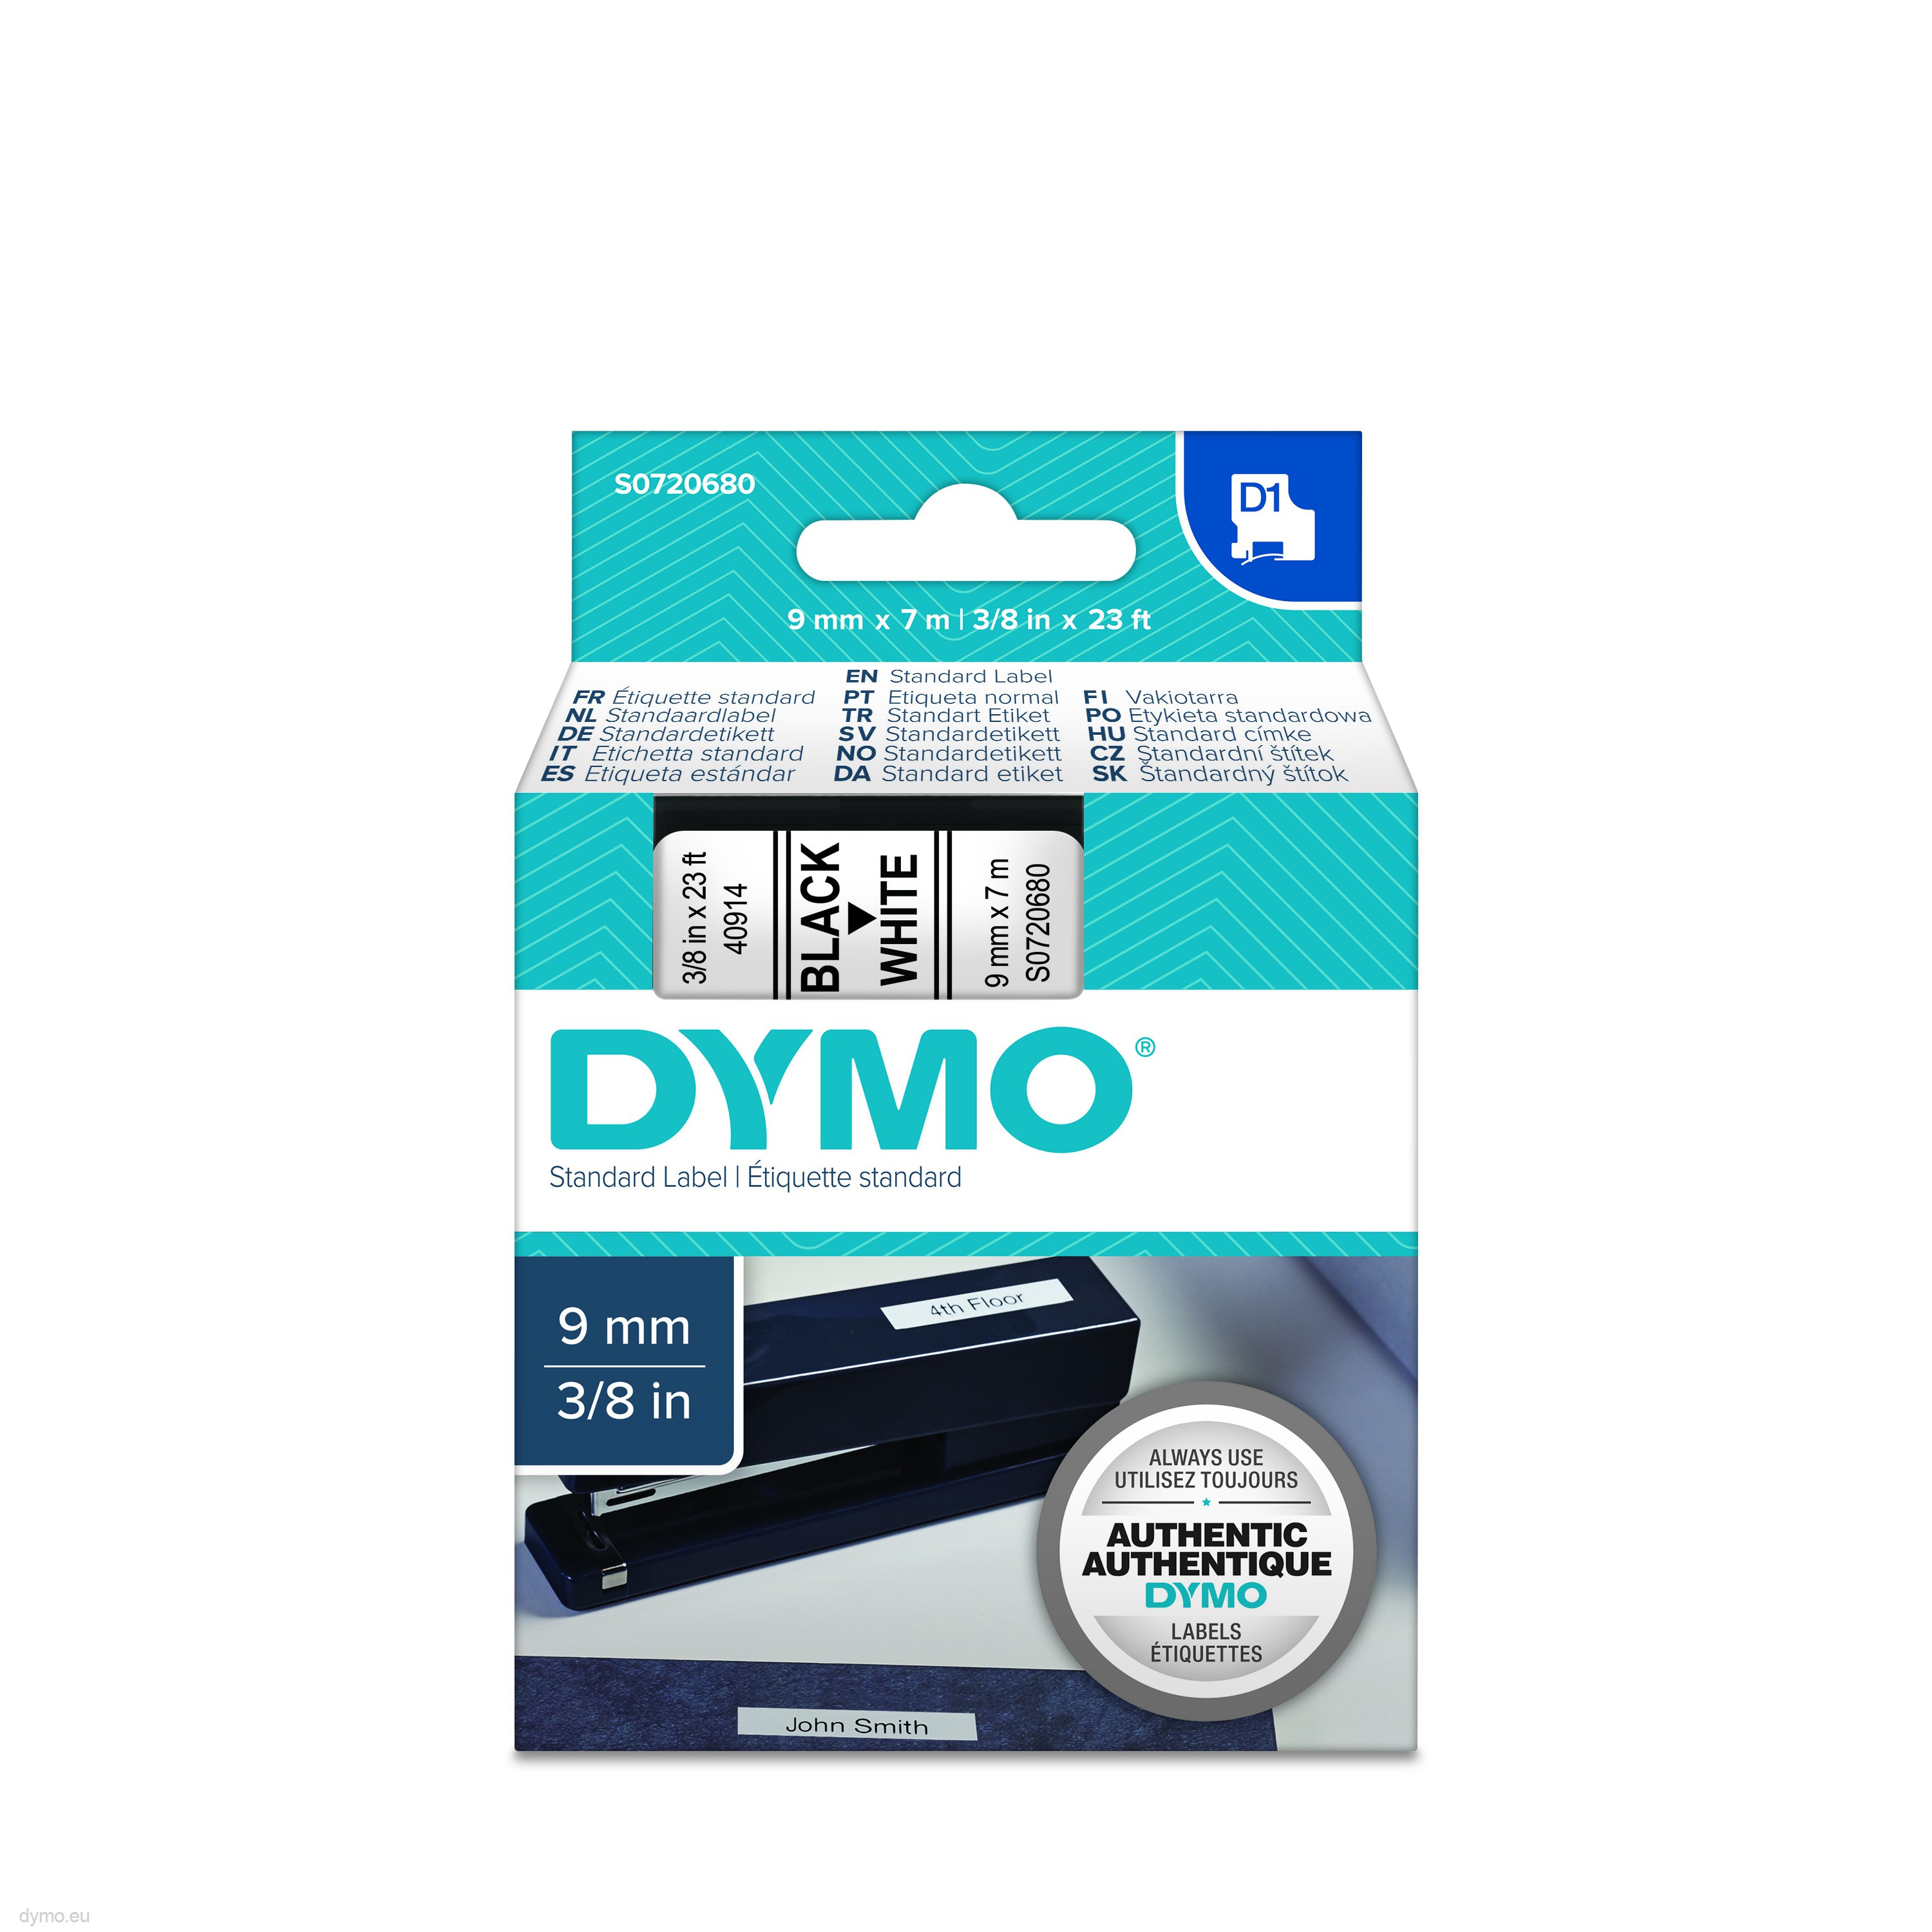 DYMO D1 Label Tape Cassette 9mm x 7m Black White 